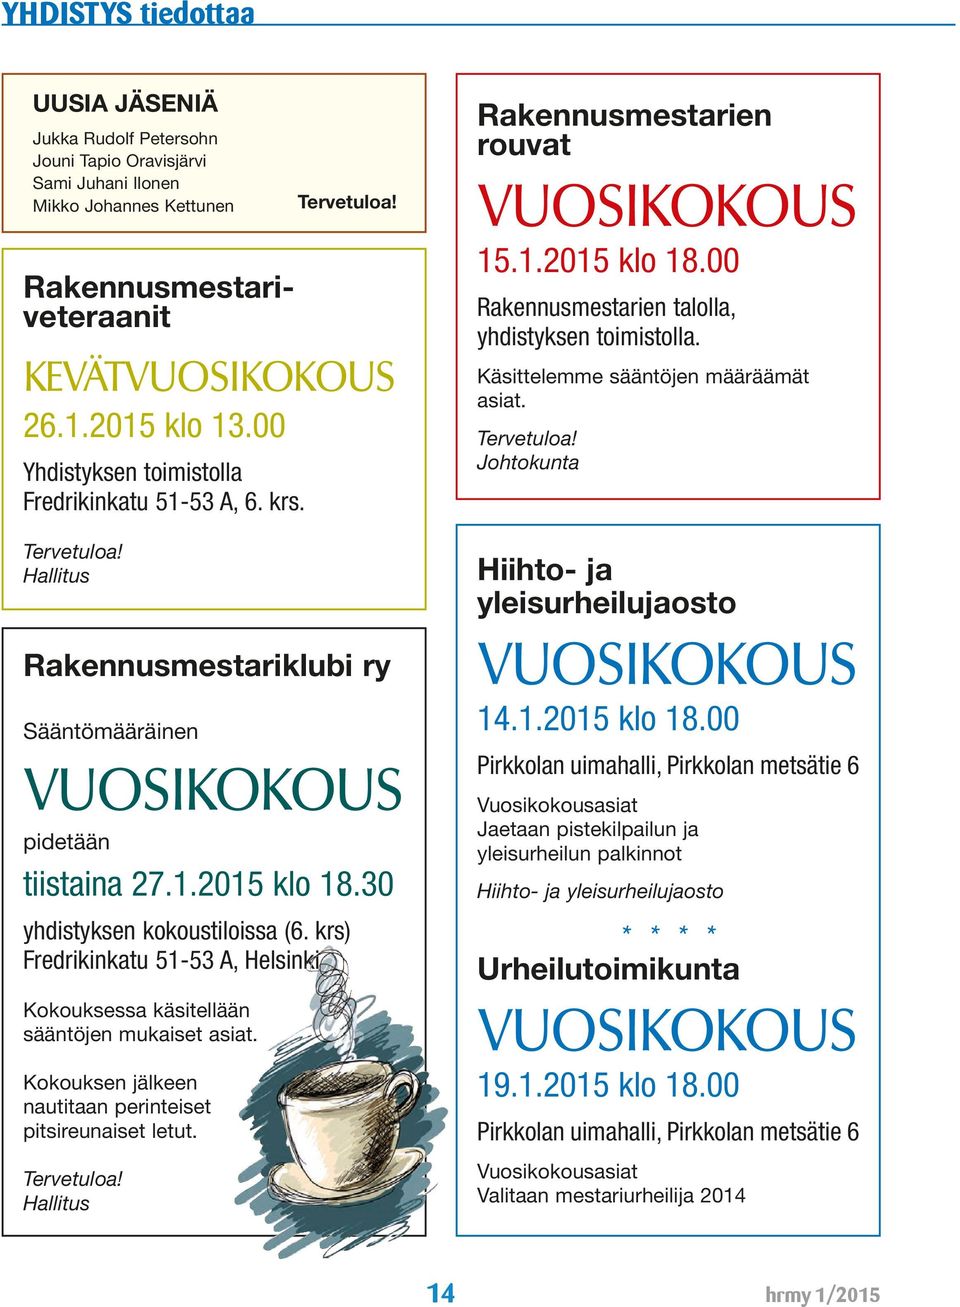 krs) Fredrikinkatu 51-53 A, Helsinki Kokouksessa käsitellään sääntöjen mukaiset asiat. Kokouksen jälkeen nautitaan perinteiset pitsireunaiset letut. Tervetuloa!